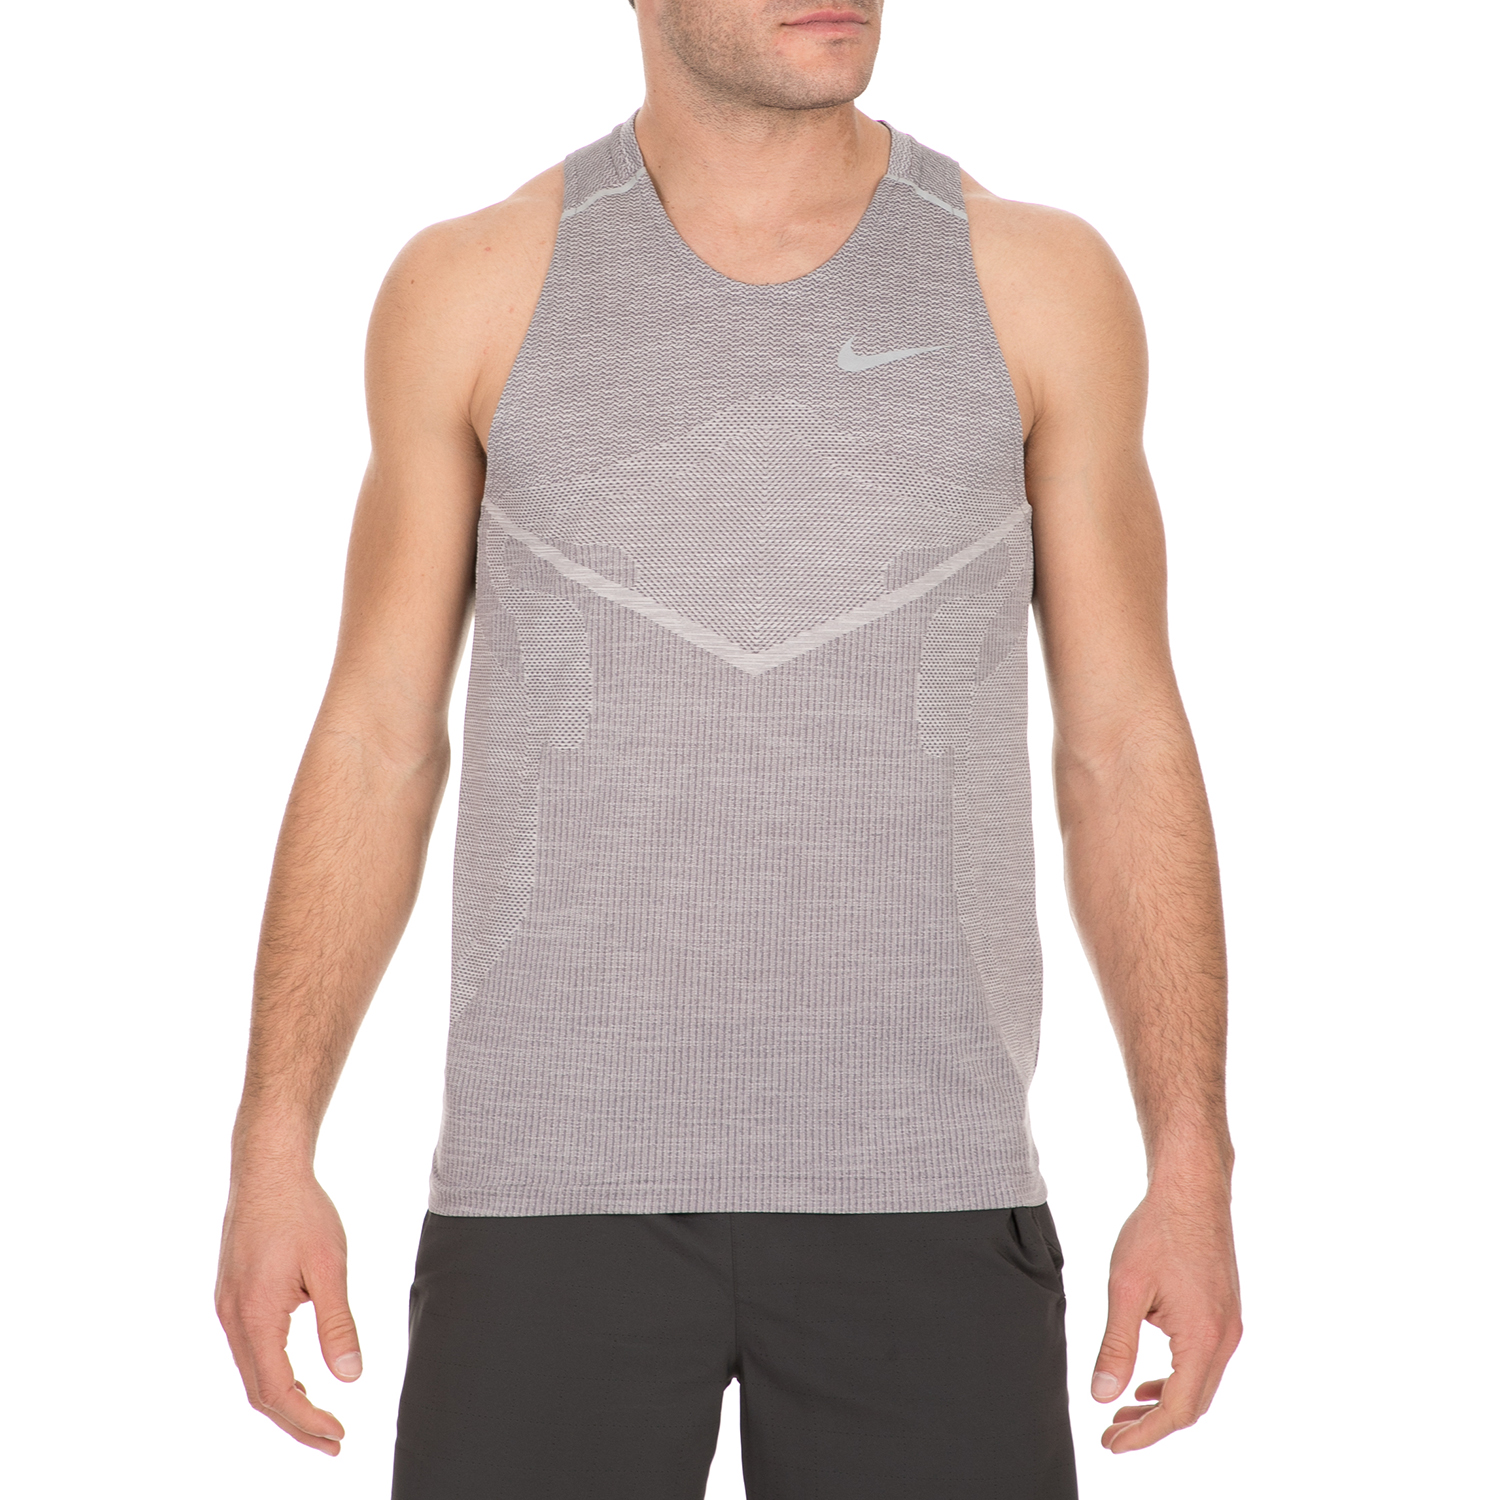 Ανδρικά/Ρούχα/Αθλητικά/T-shirt NIKE - Ανδρική αμάνικη μπλούζα NIKE TECHKNIT ULTRA γκρι